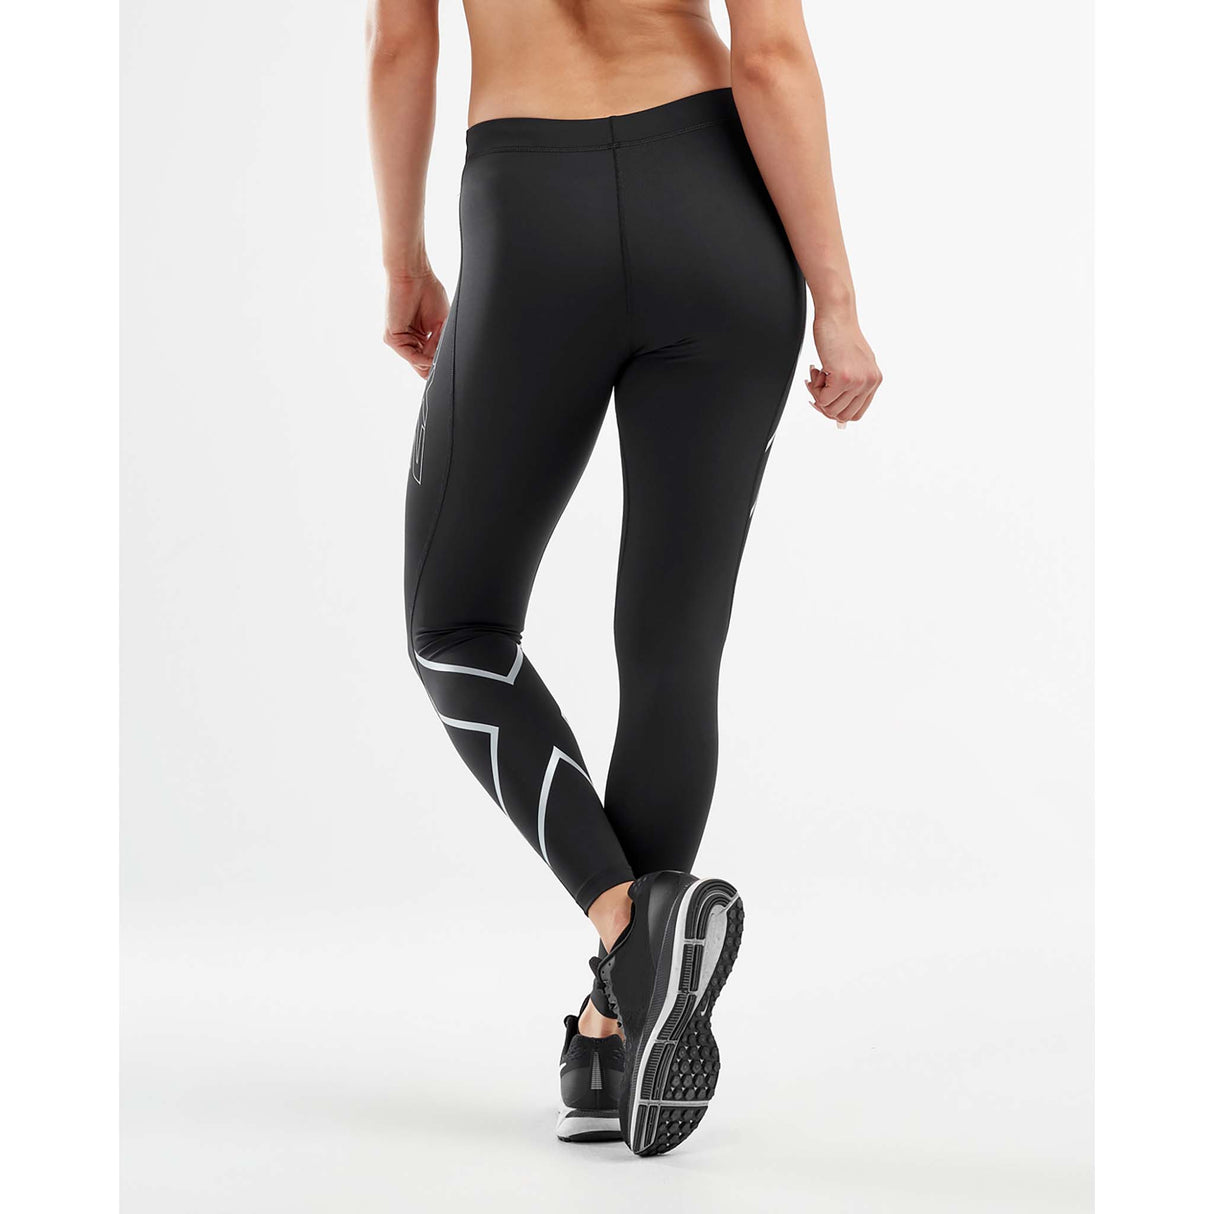 2XU Core Compression leggings sport pour femme dos2XU Core Compression leggings sport noir argent femme dos